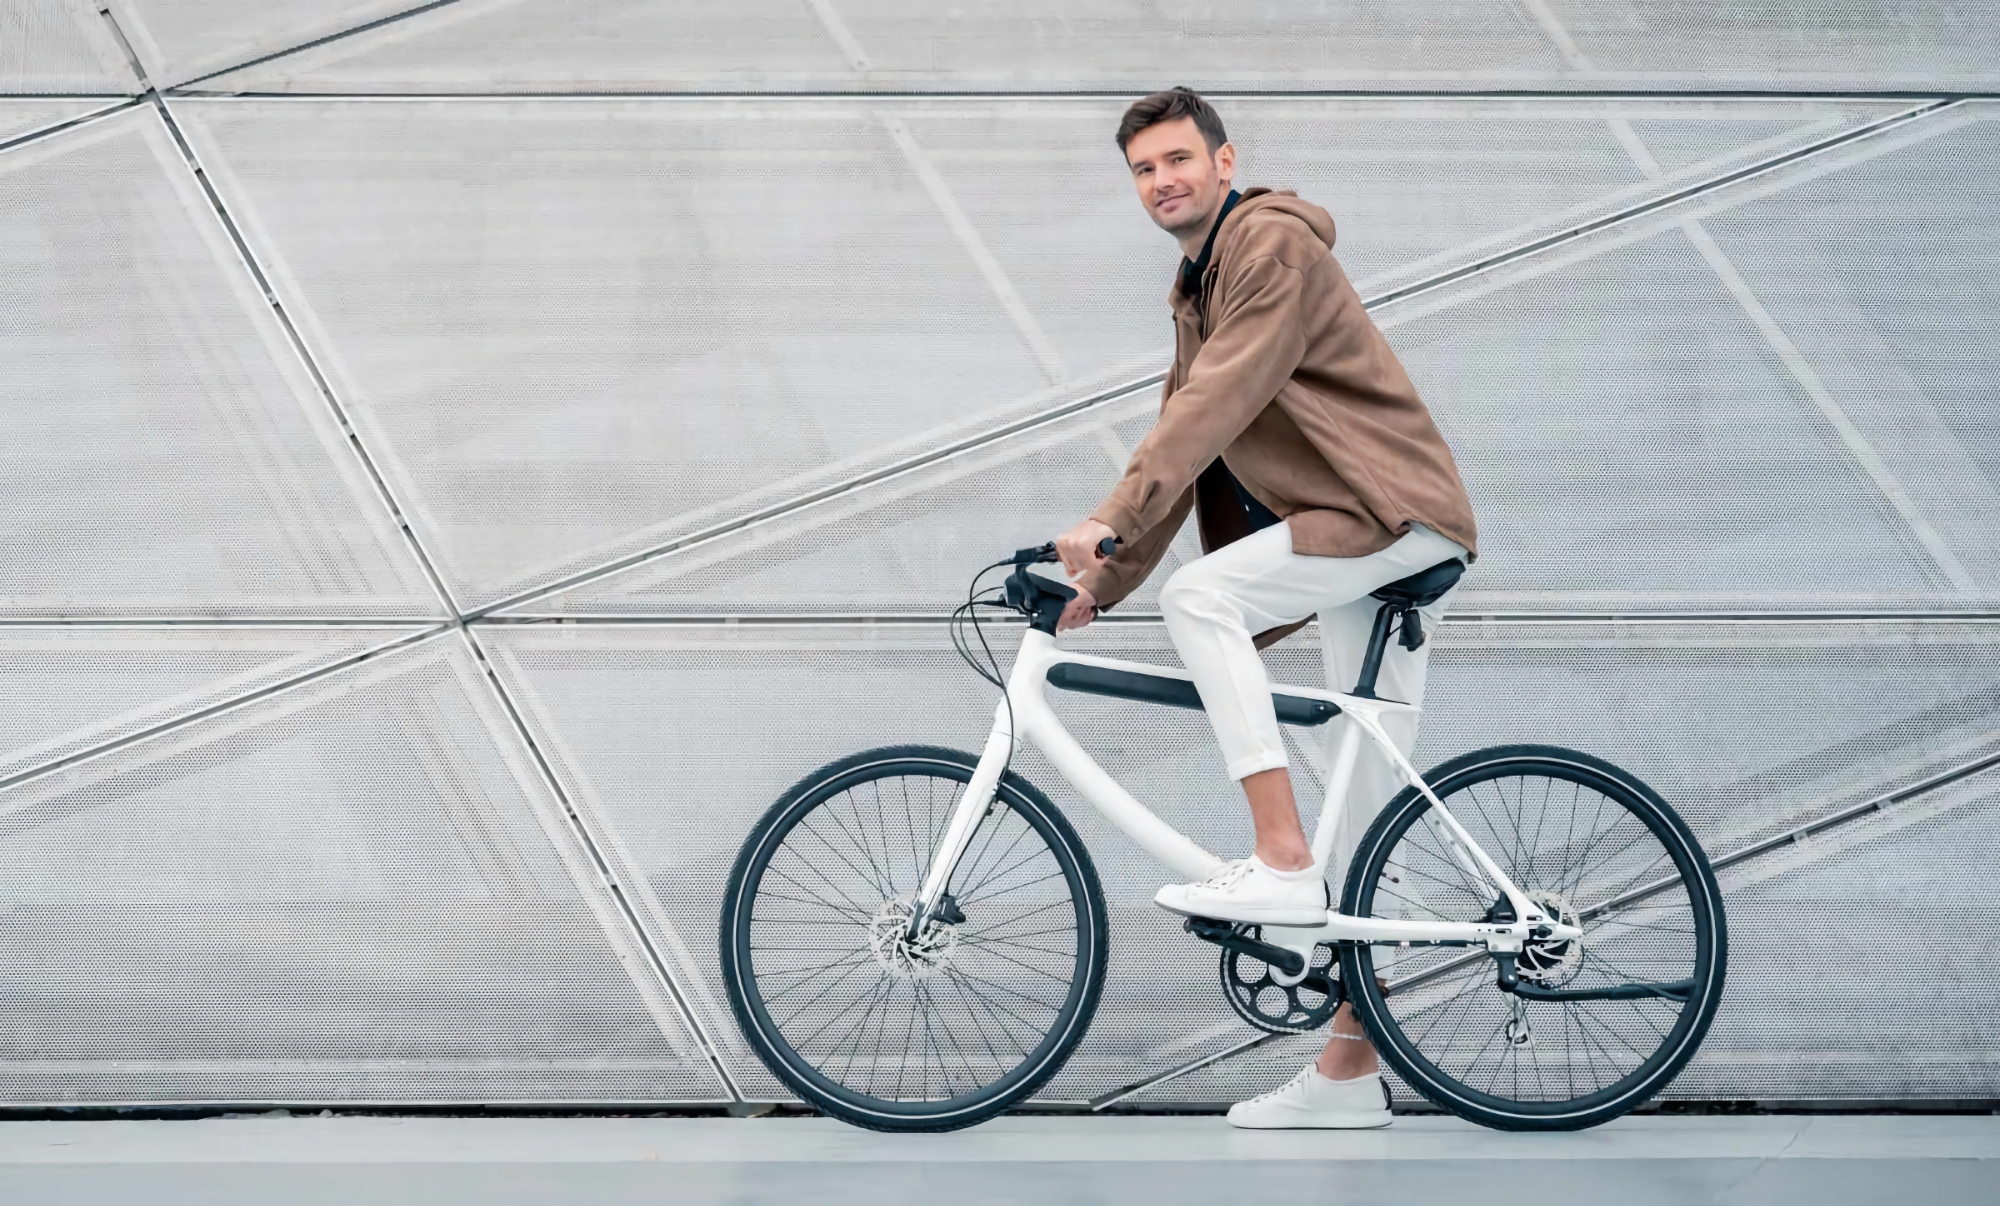 Urtopia ha lanzado en Europa la Chord: una elegante bicicleta eléctrica con 120 km de autonomía, GPS y escáner de huellas dactilares.